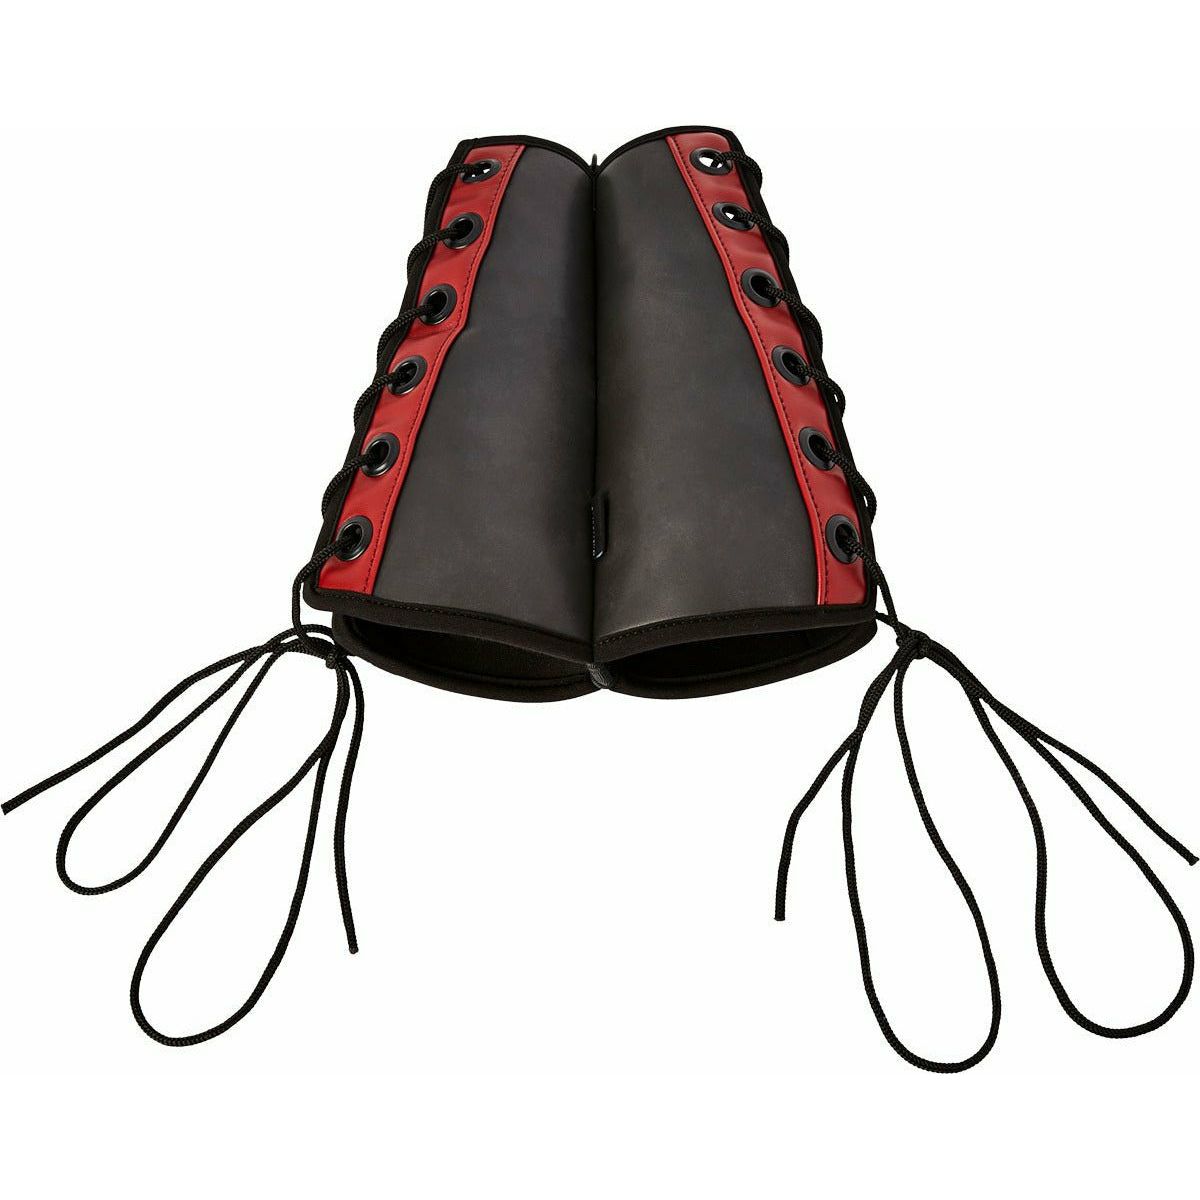 Sportsheets Bondage Gauntlet Cuffs - Red and Black